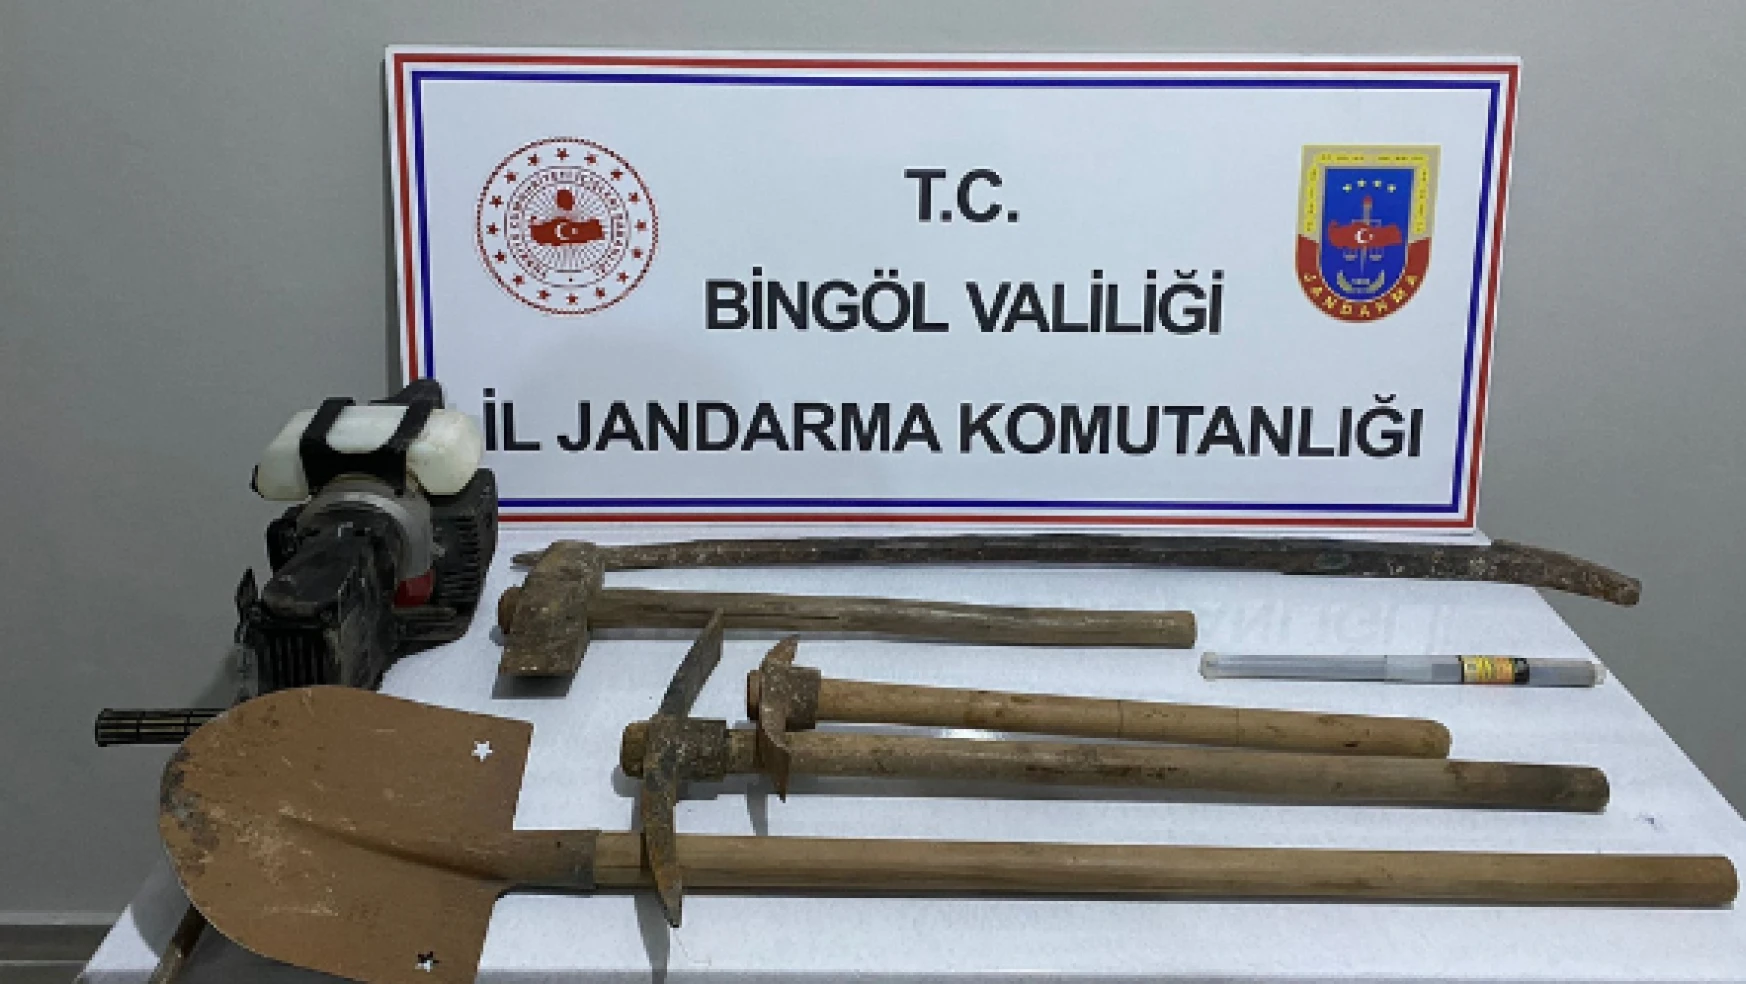 Bingöl'de kaçak kazıya suçüstü: 4 gözlatı